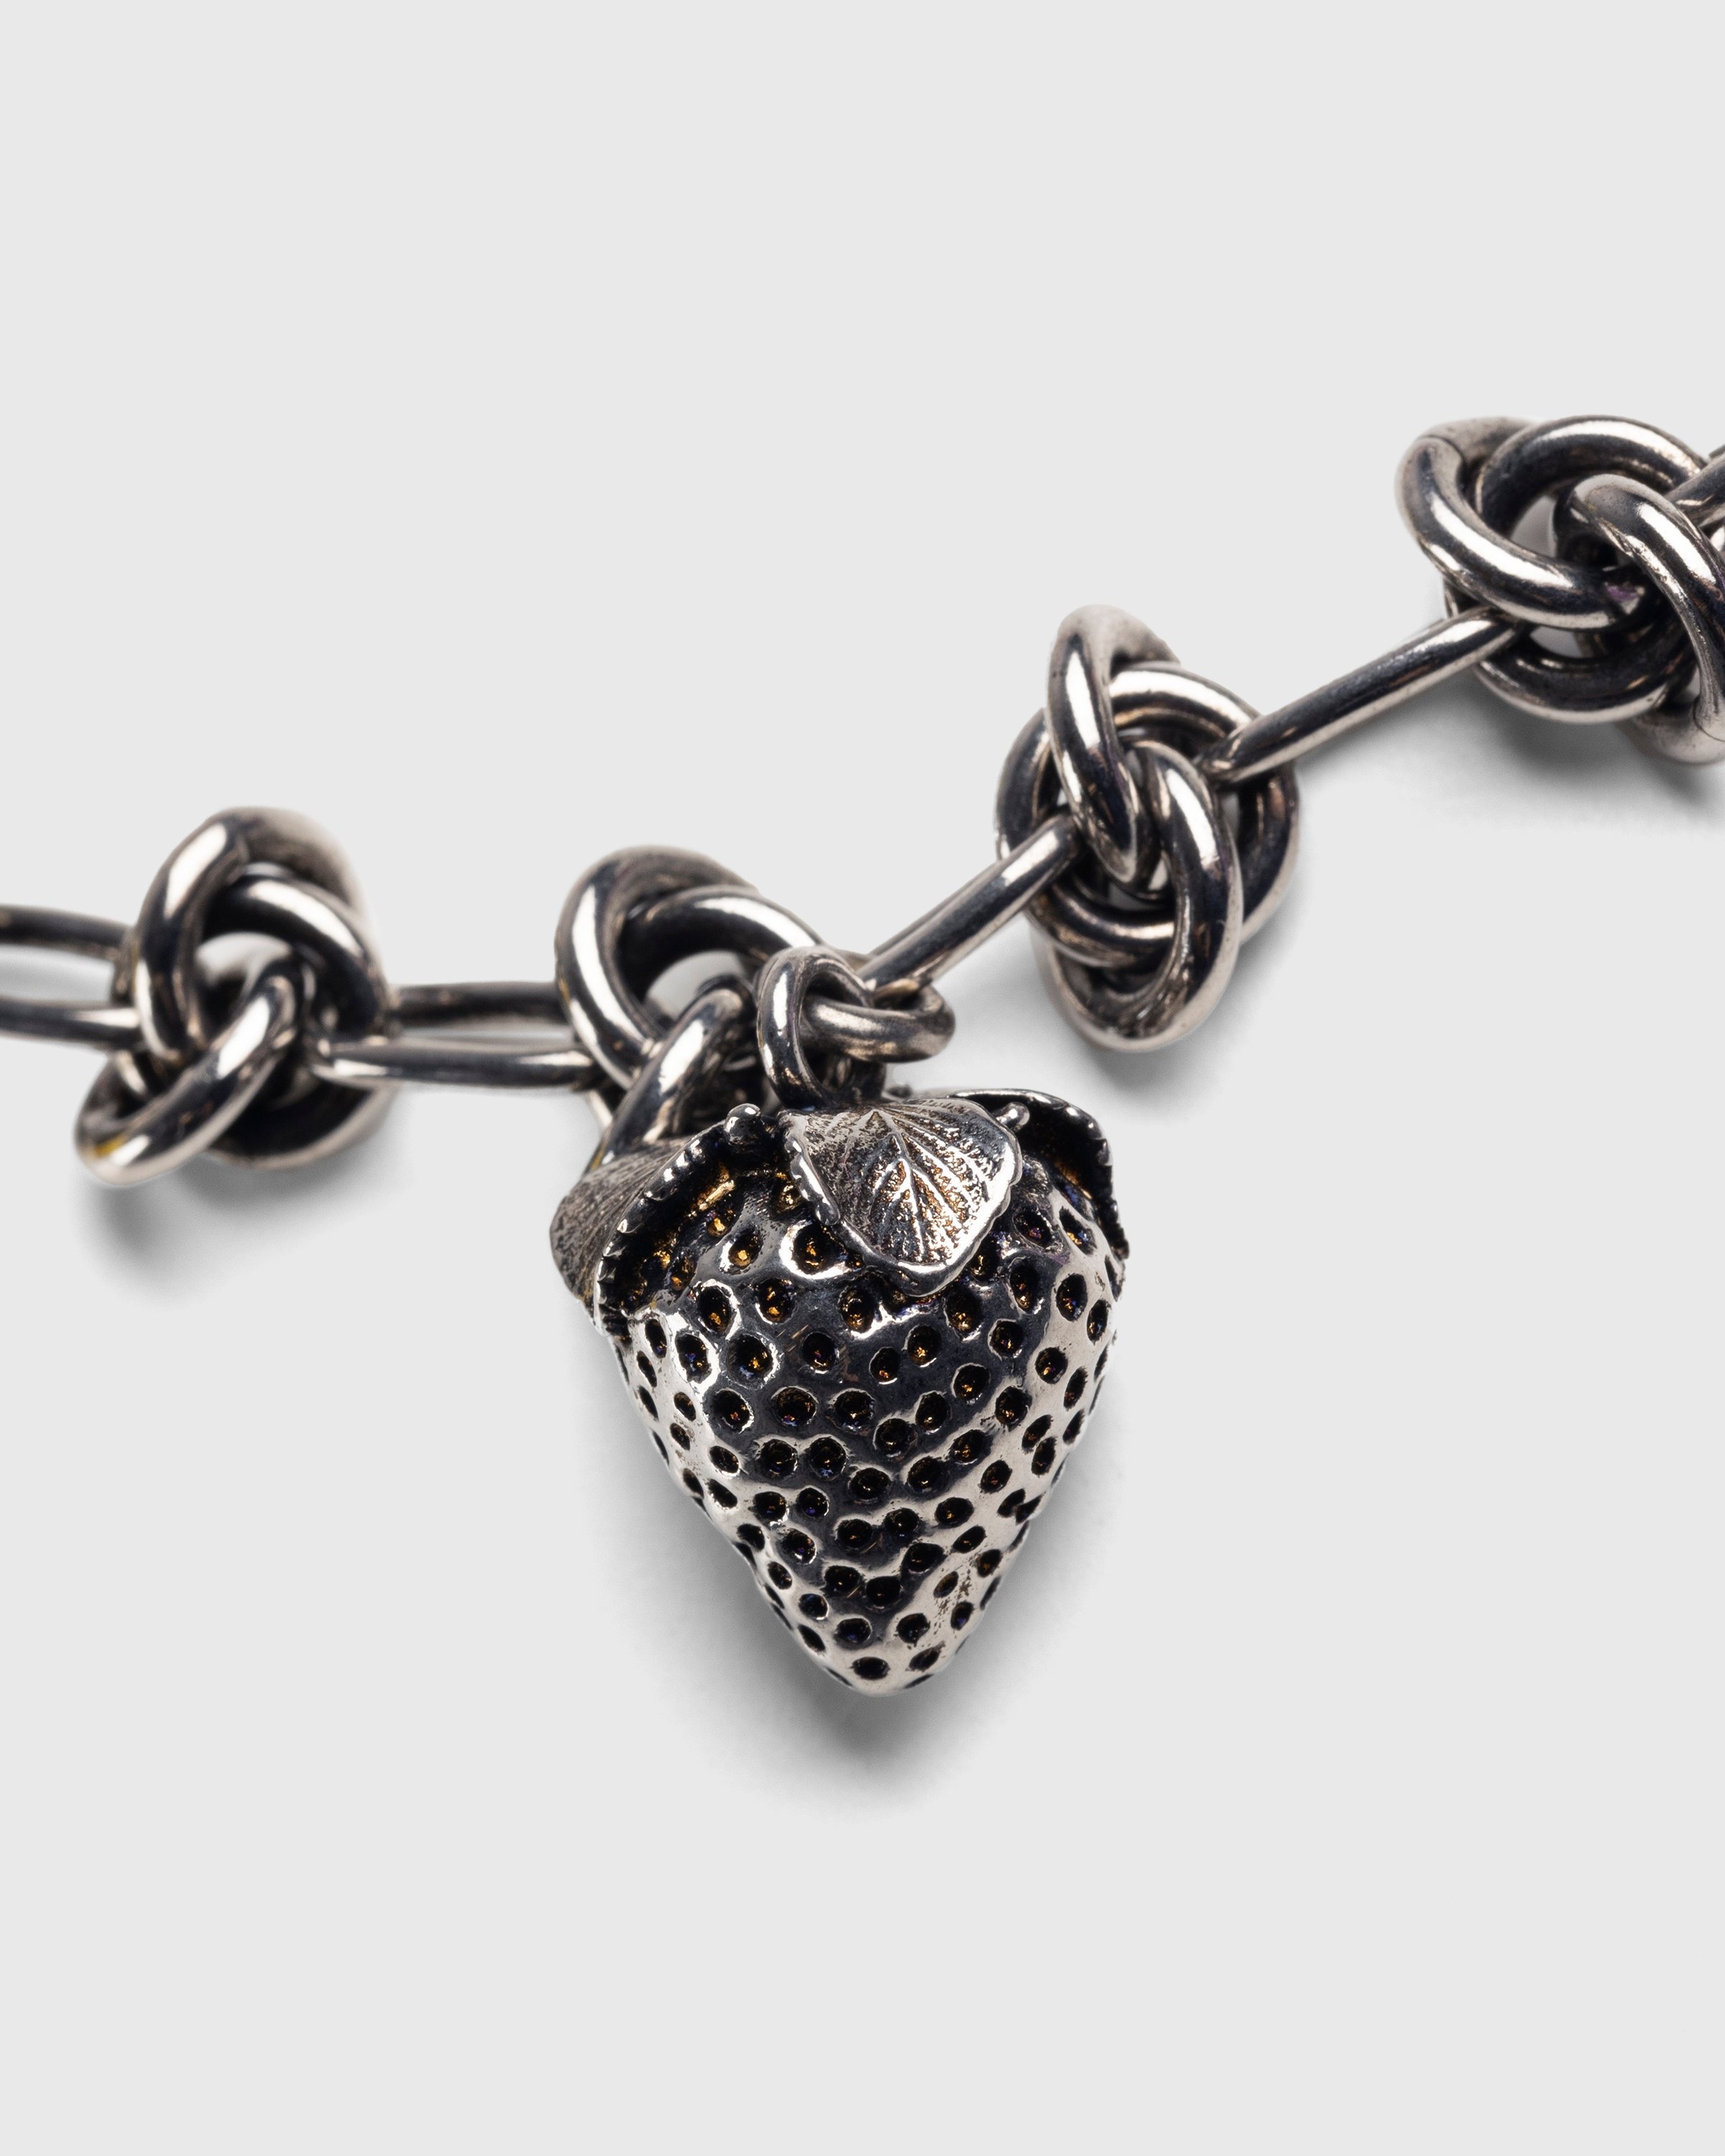 Acne Studios – Charm Necklace Antique Silver - Bracelets - Multi - Image 2